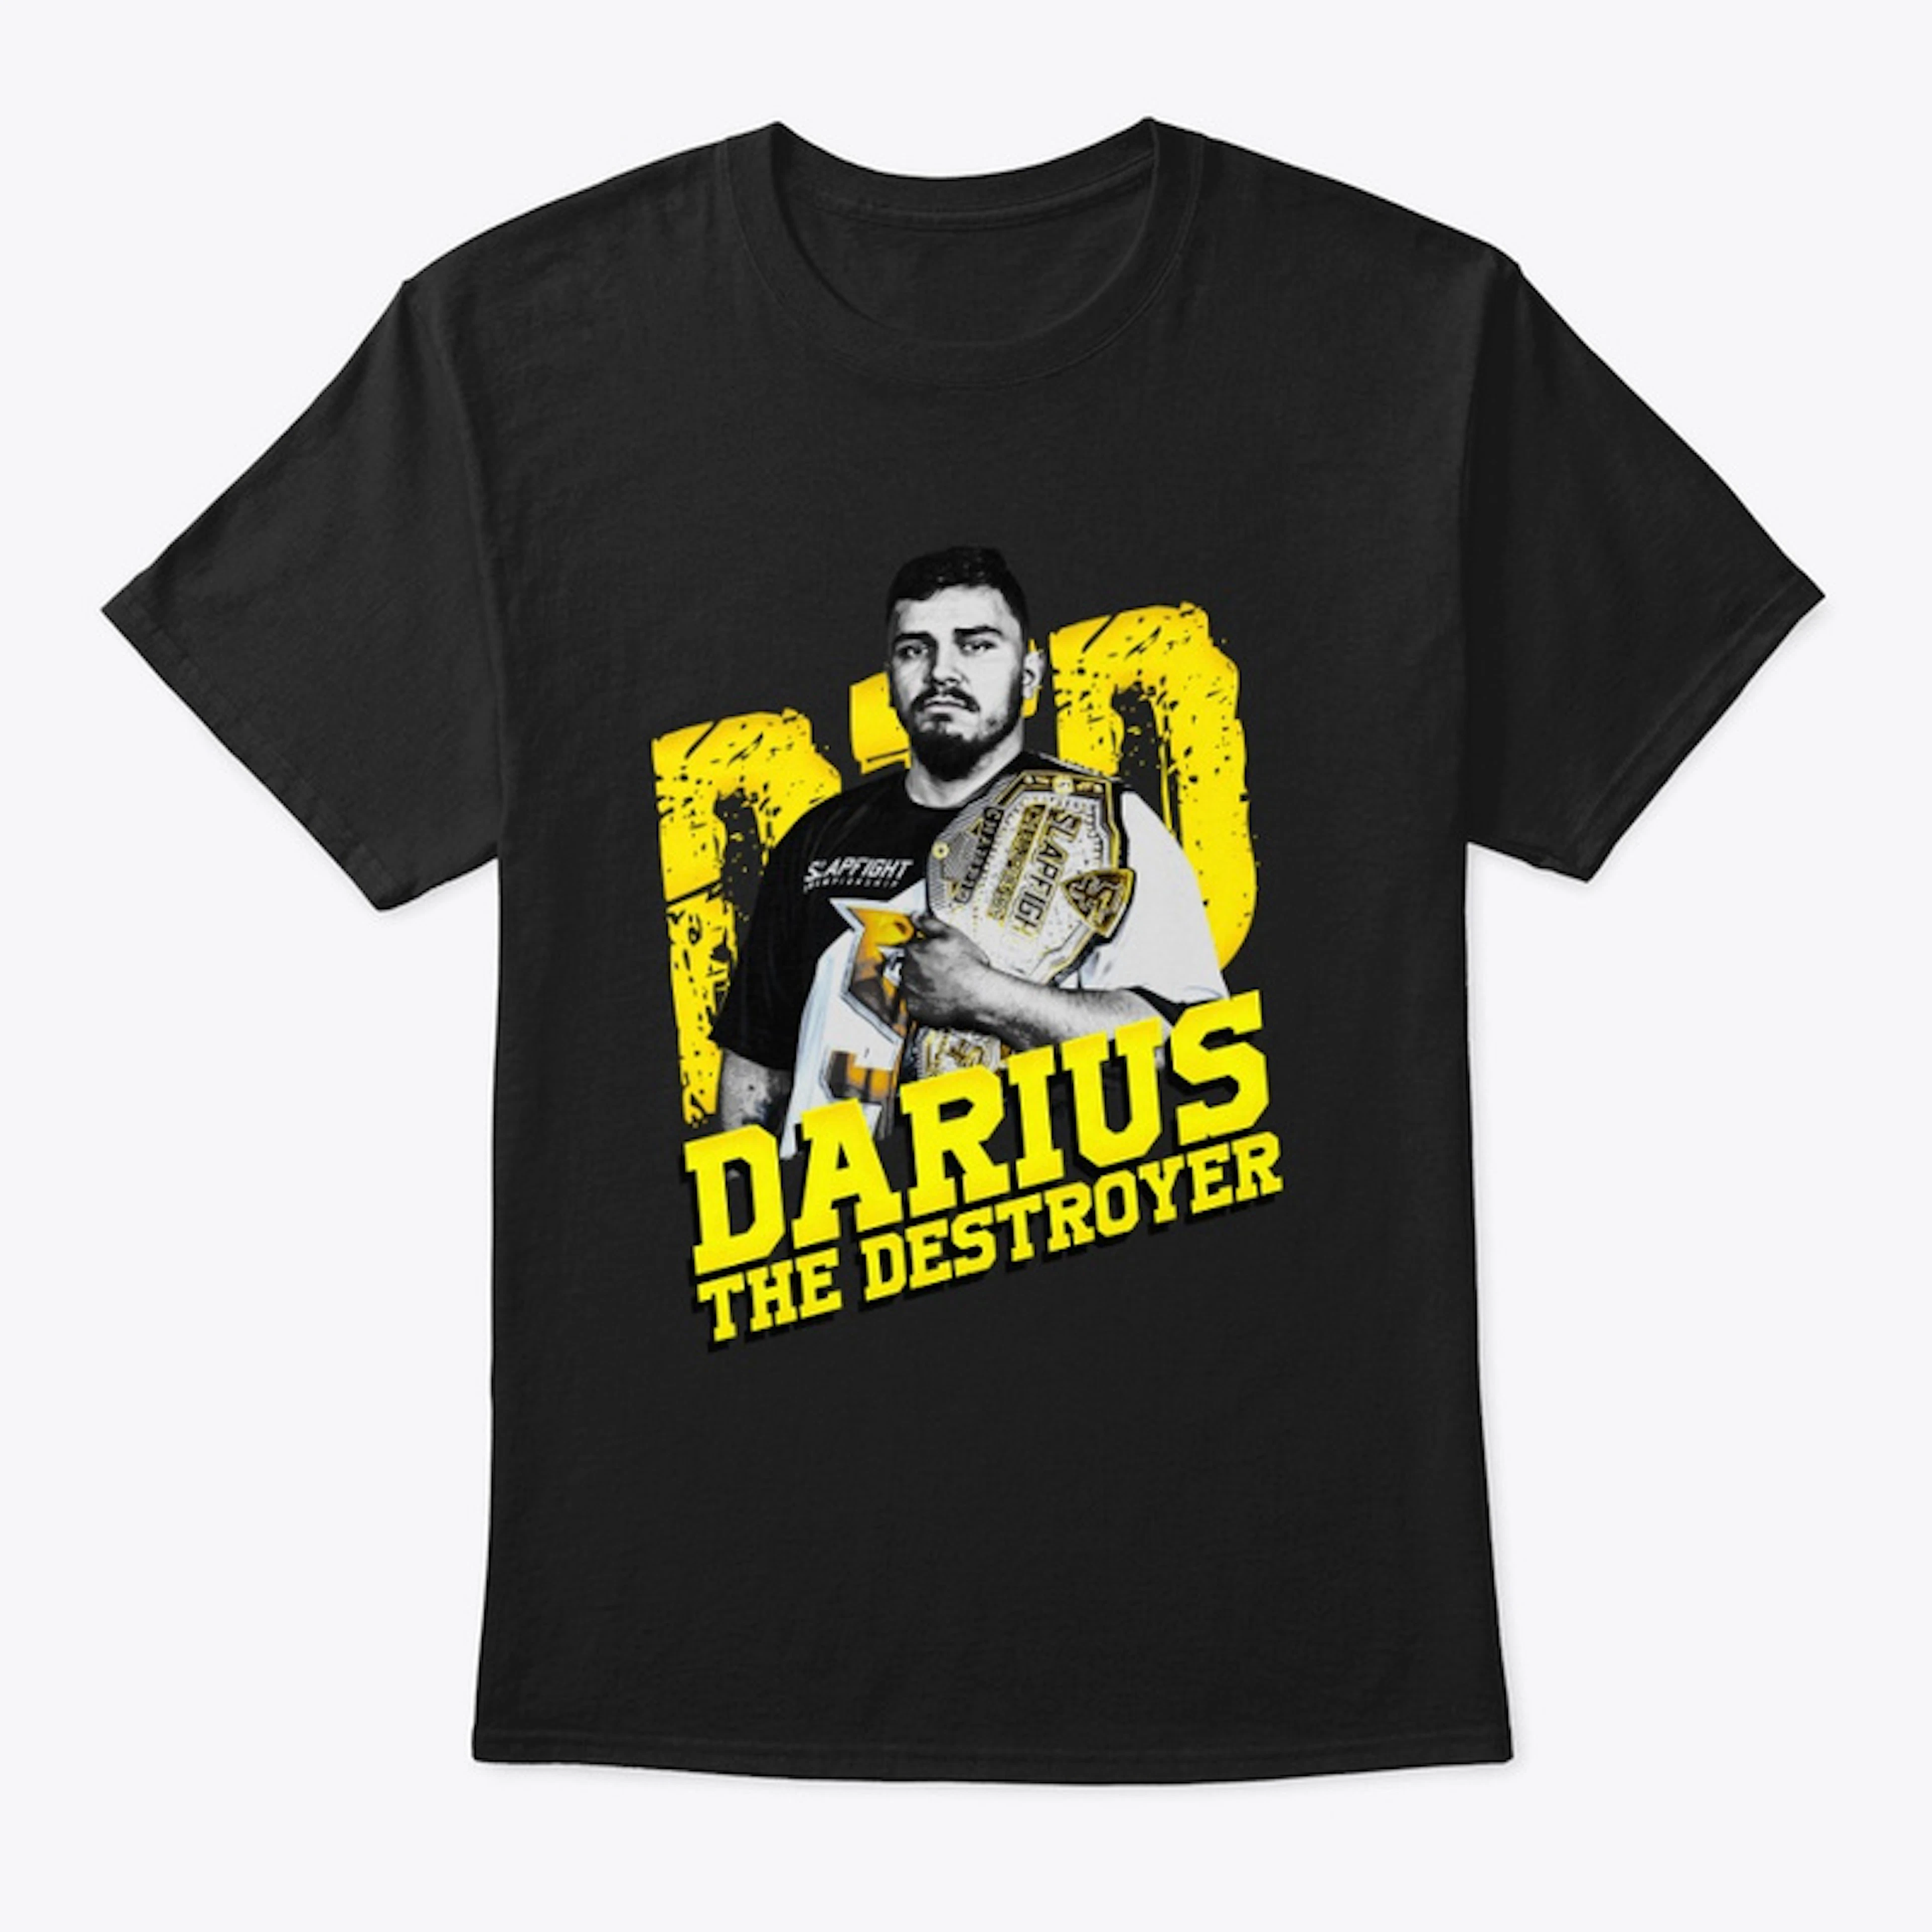 Darius the Destroyer